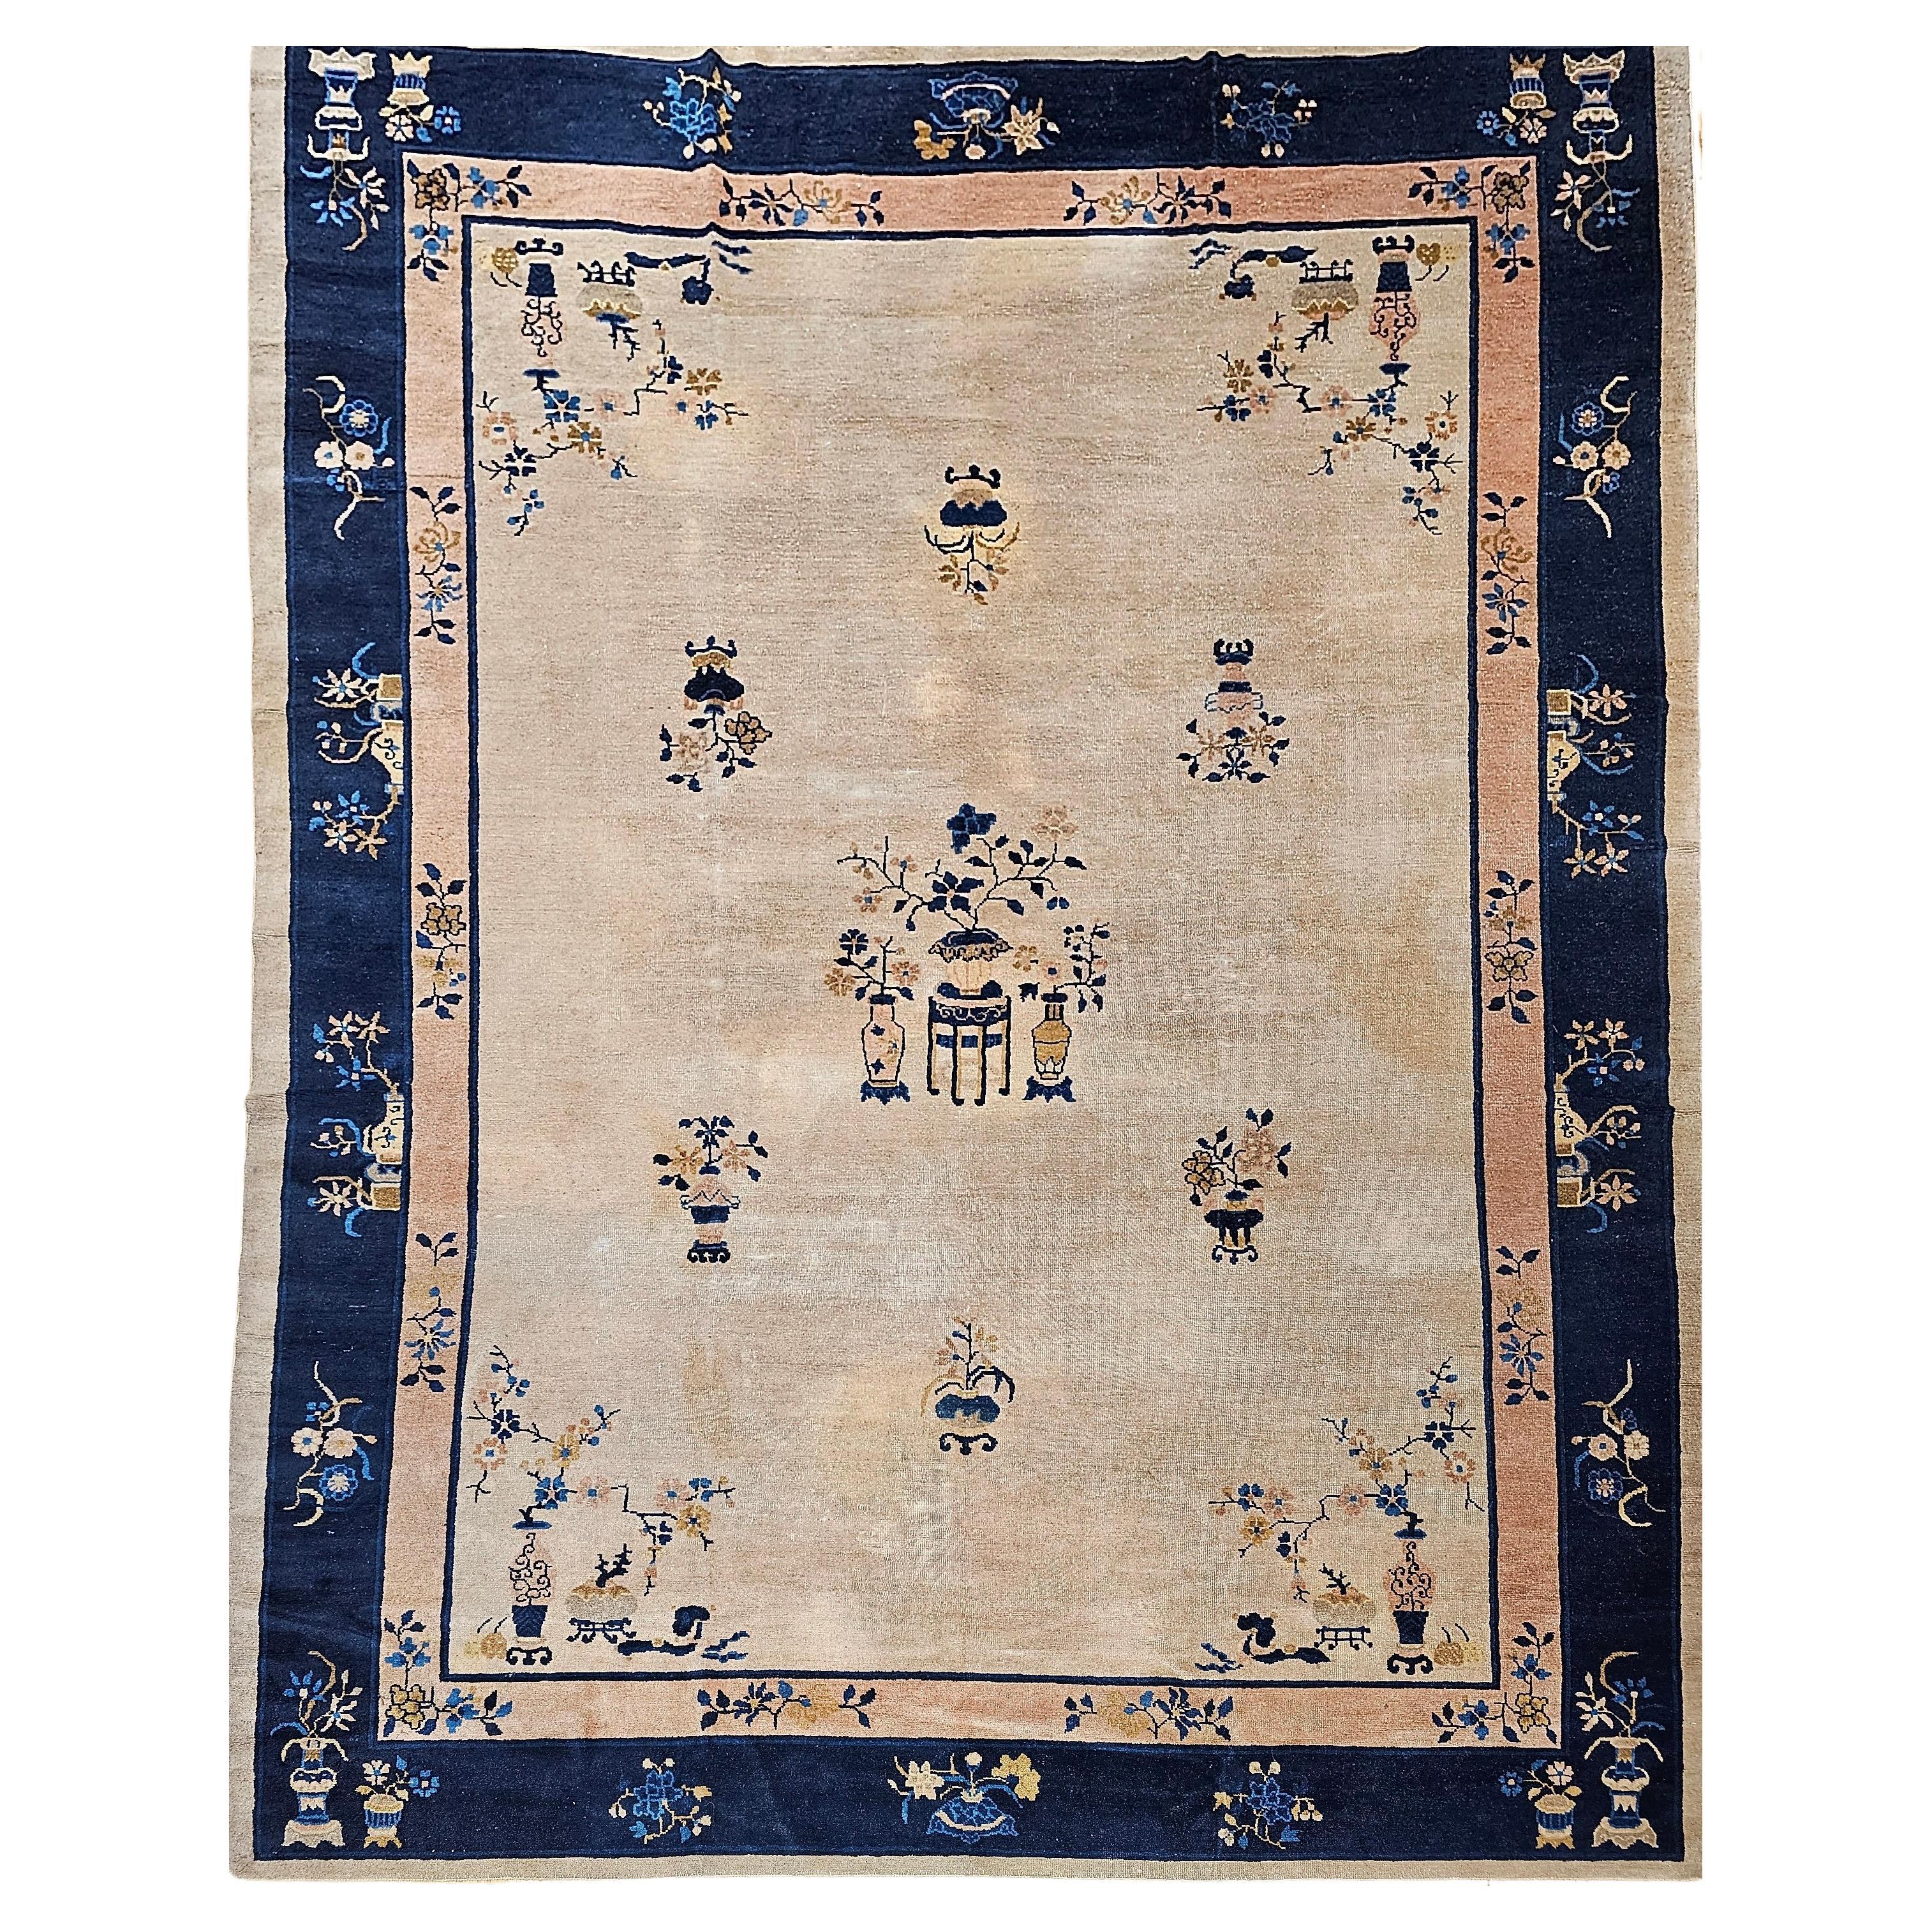 Chinesischer Pekinger Vintage-Teppich in Zimmergröße in blassem Elfenbein, Marineblau, Blassrosa, Französischem Rosa